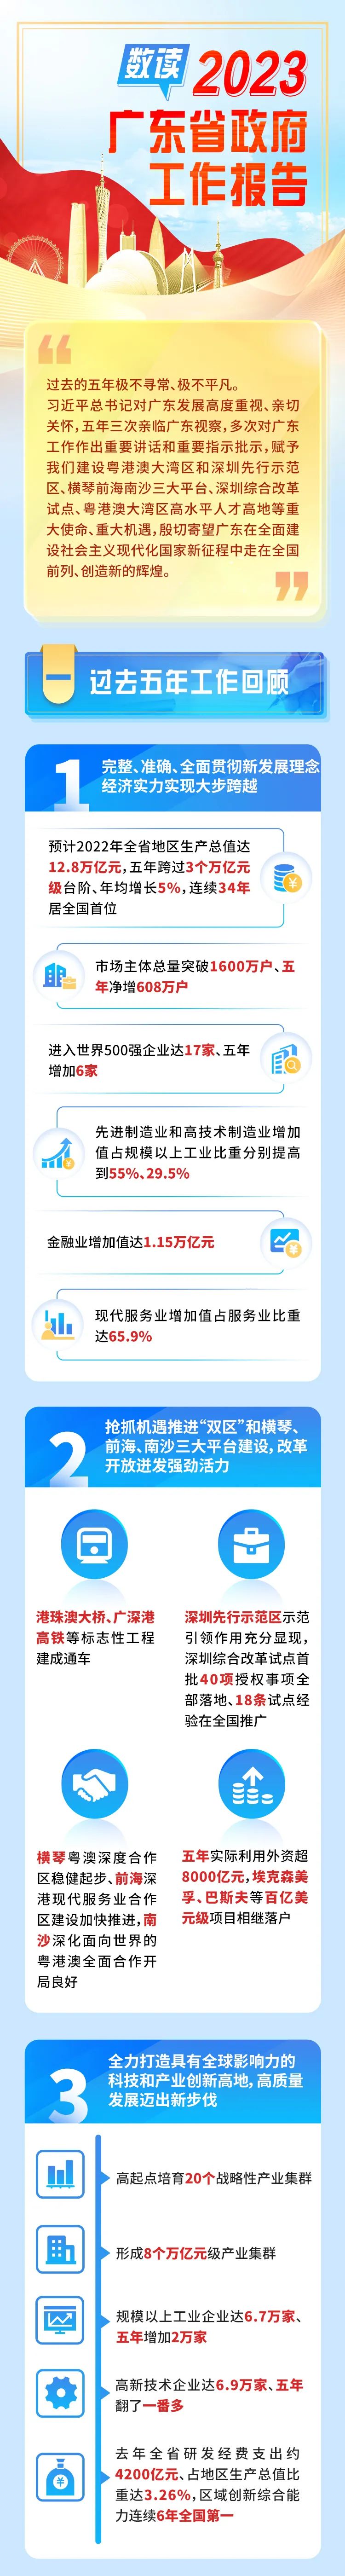 数读2023广东省政府工作报告